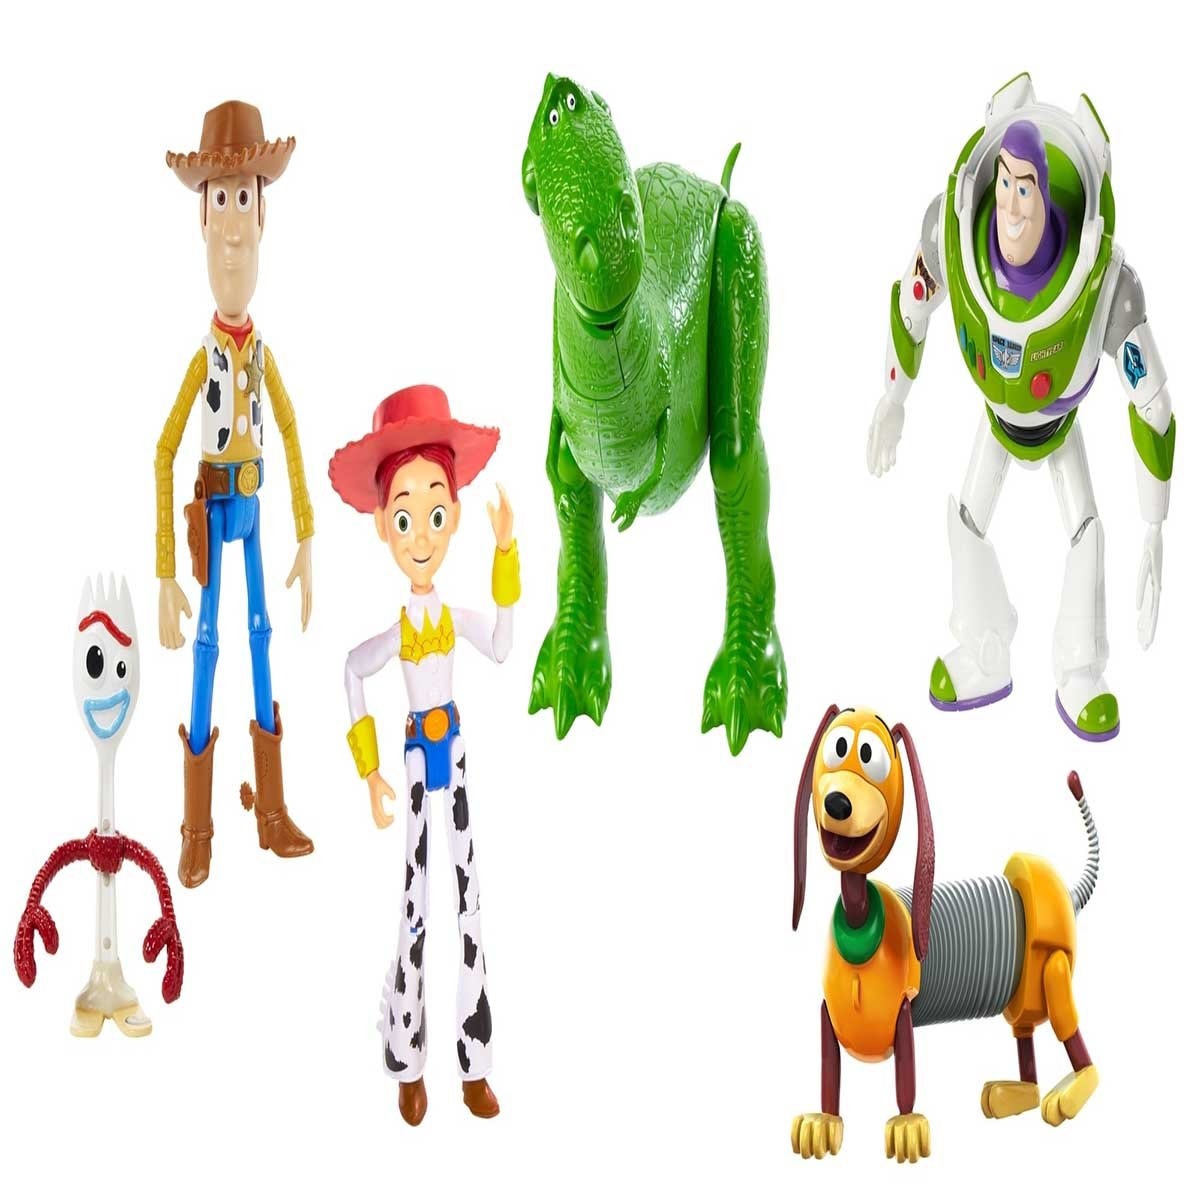 Toy story 6 figuras de acción woody, buzz lightyear, forky, jessie